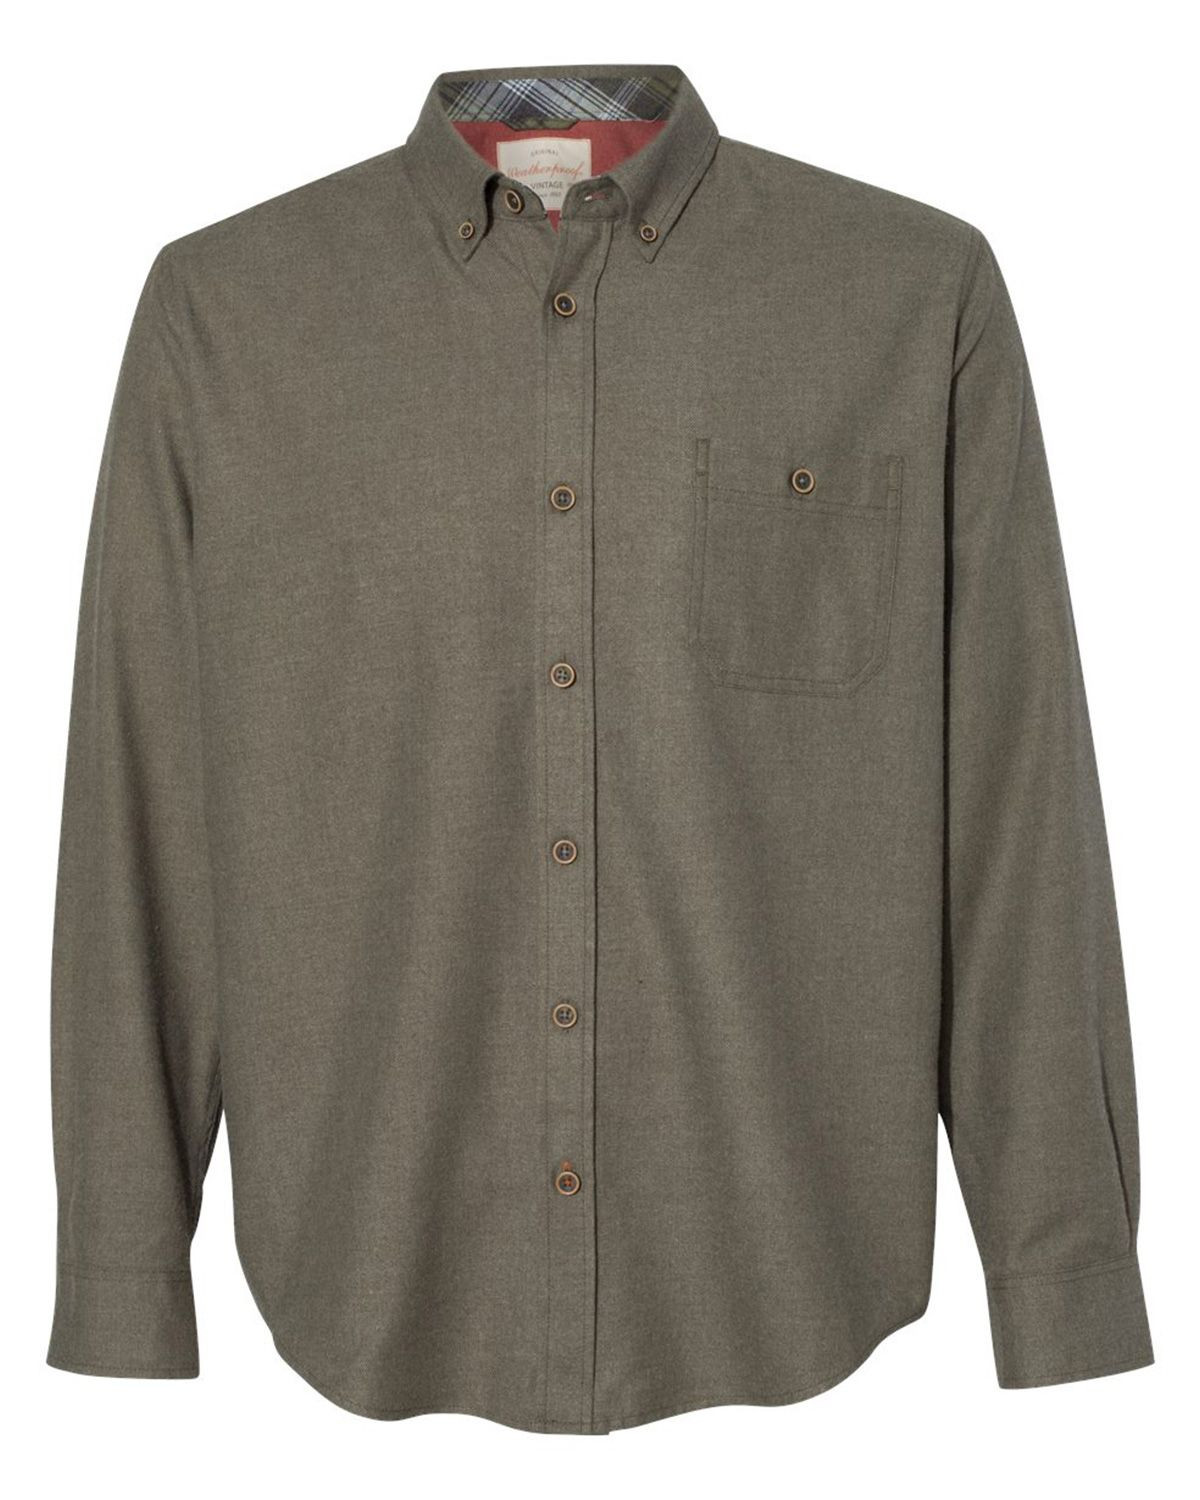 Weatherproof 198306 Men's Vintage Brushed Flannel Solid Shirt - Dusty Olive - S #vintage